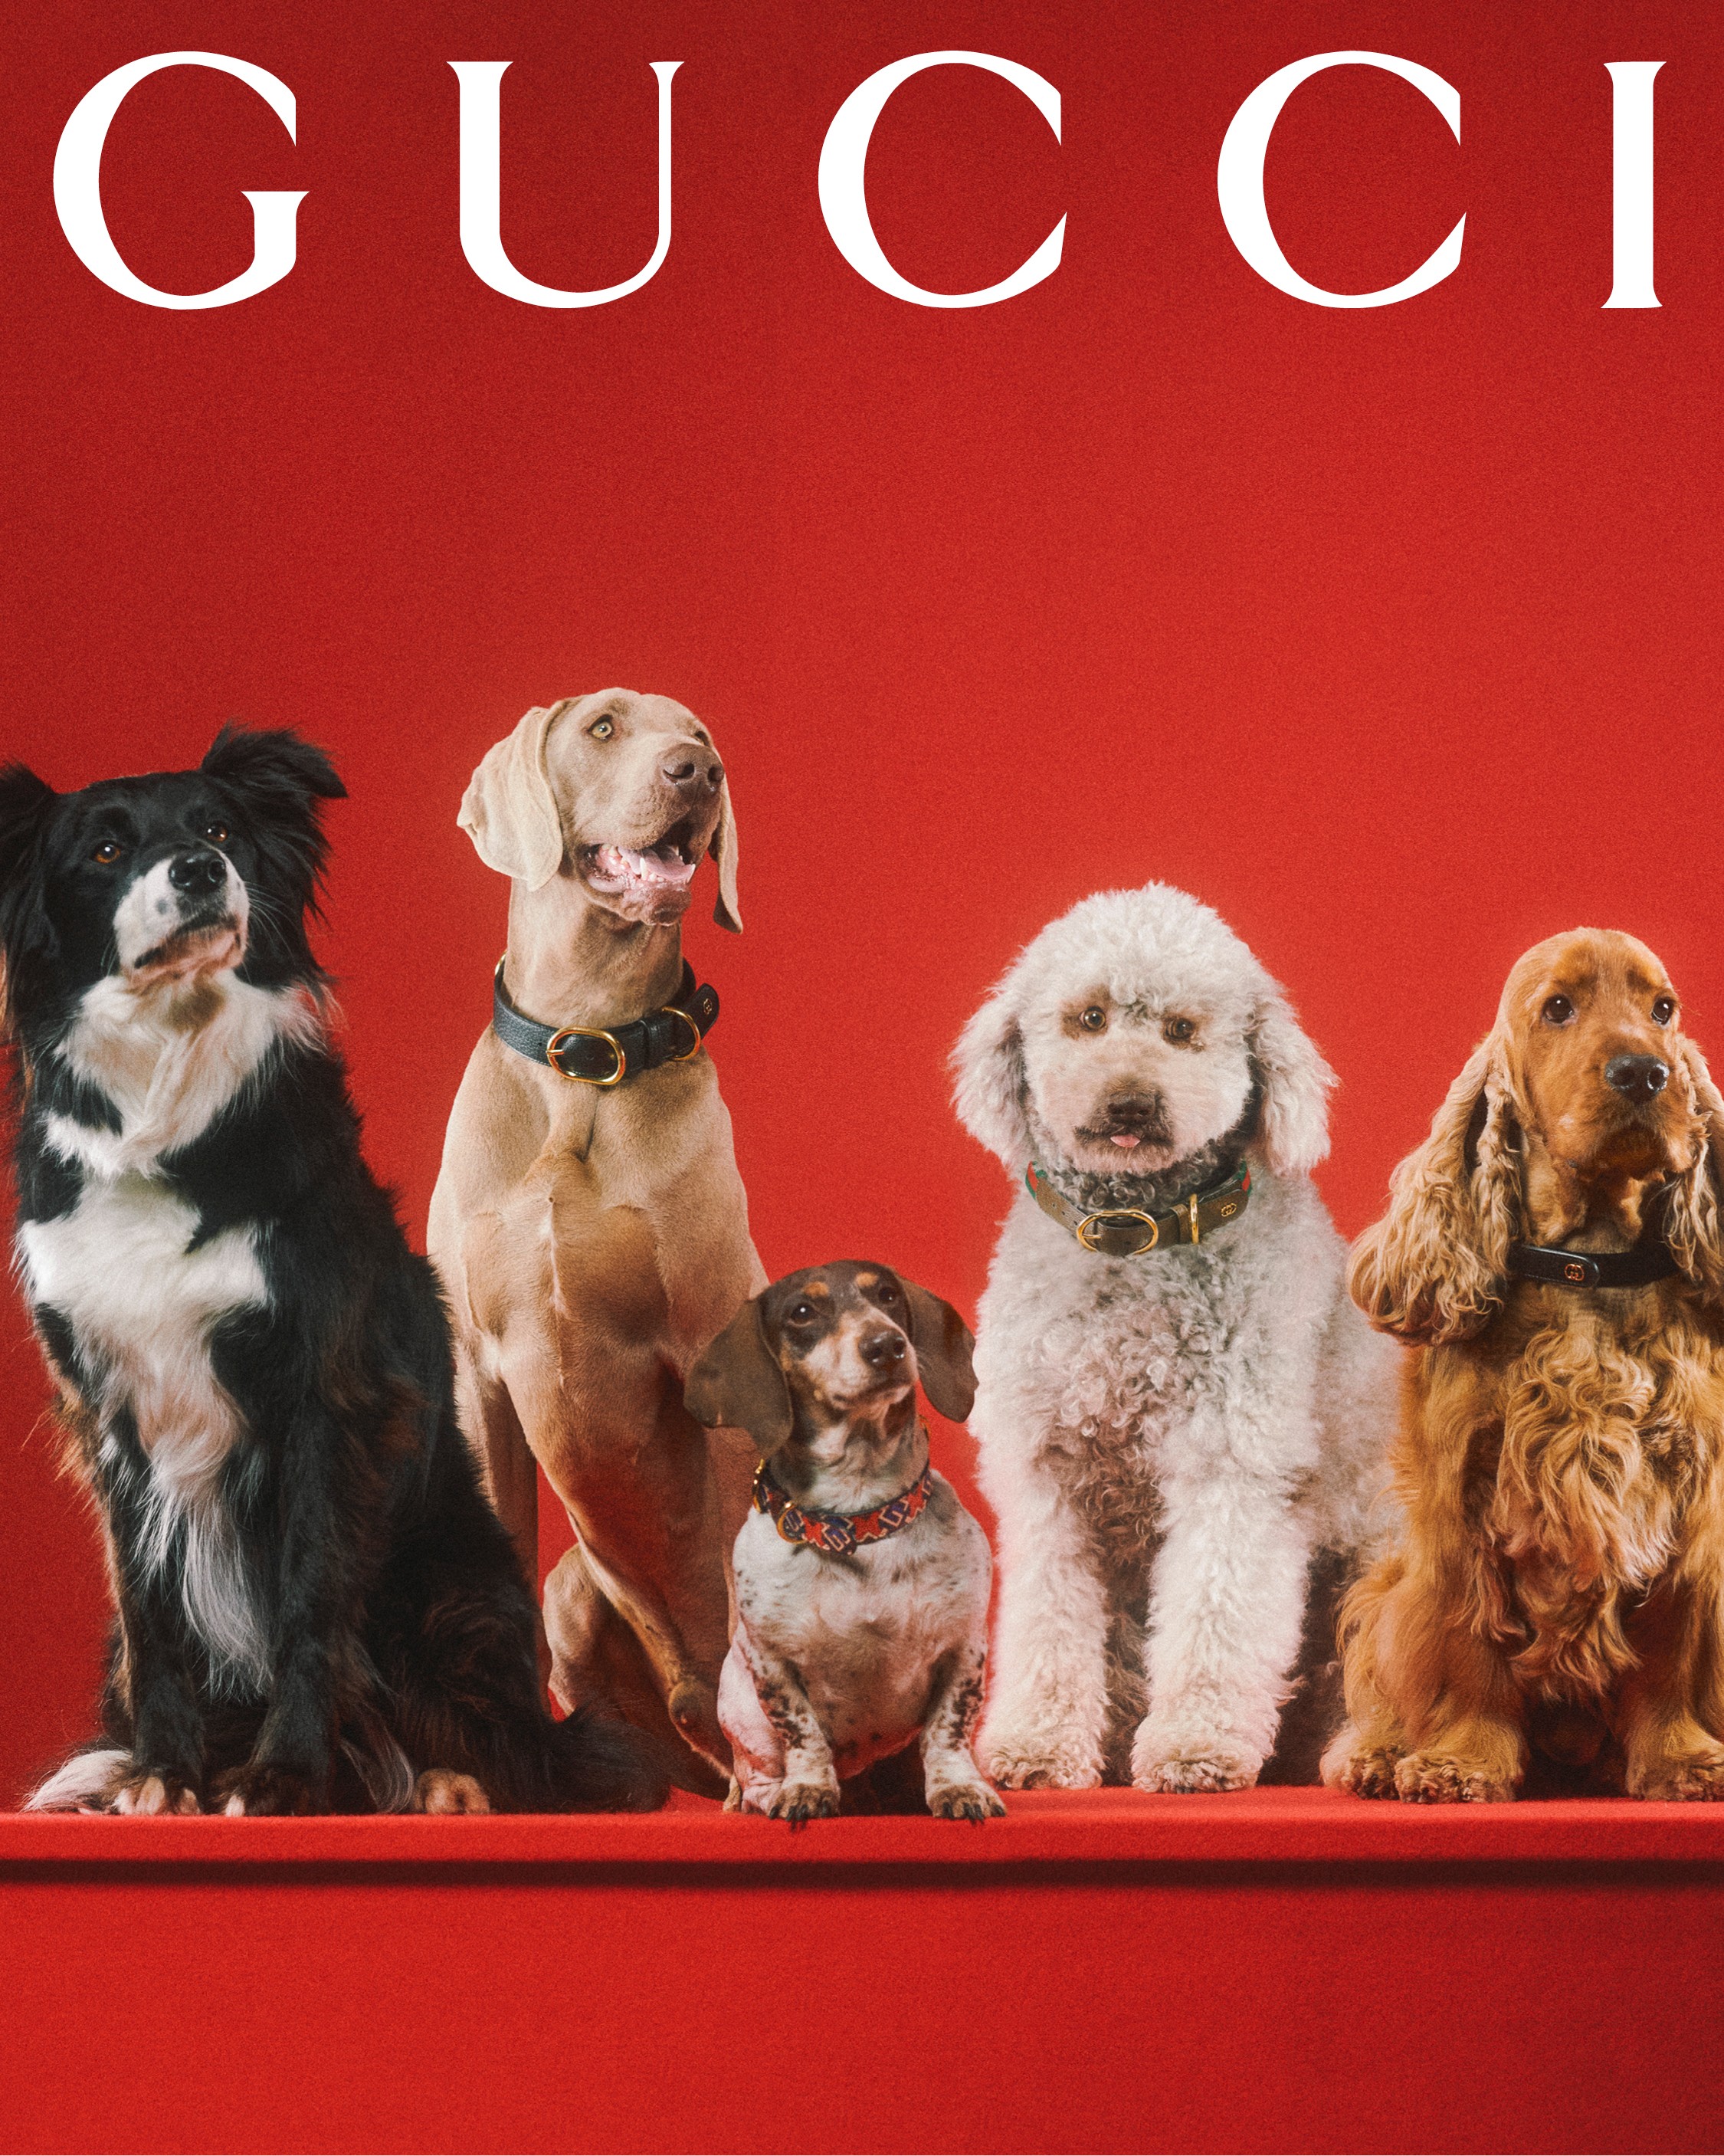 Gucci lança linha de acessórios para cães e gatos  (Foto: Divulgação)